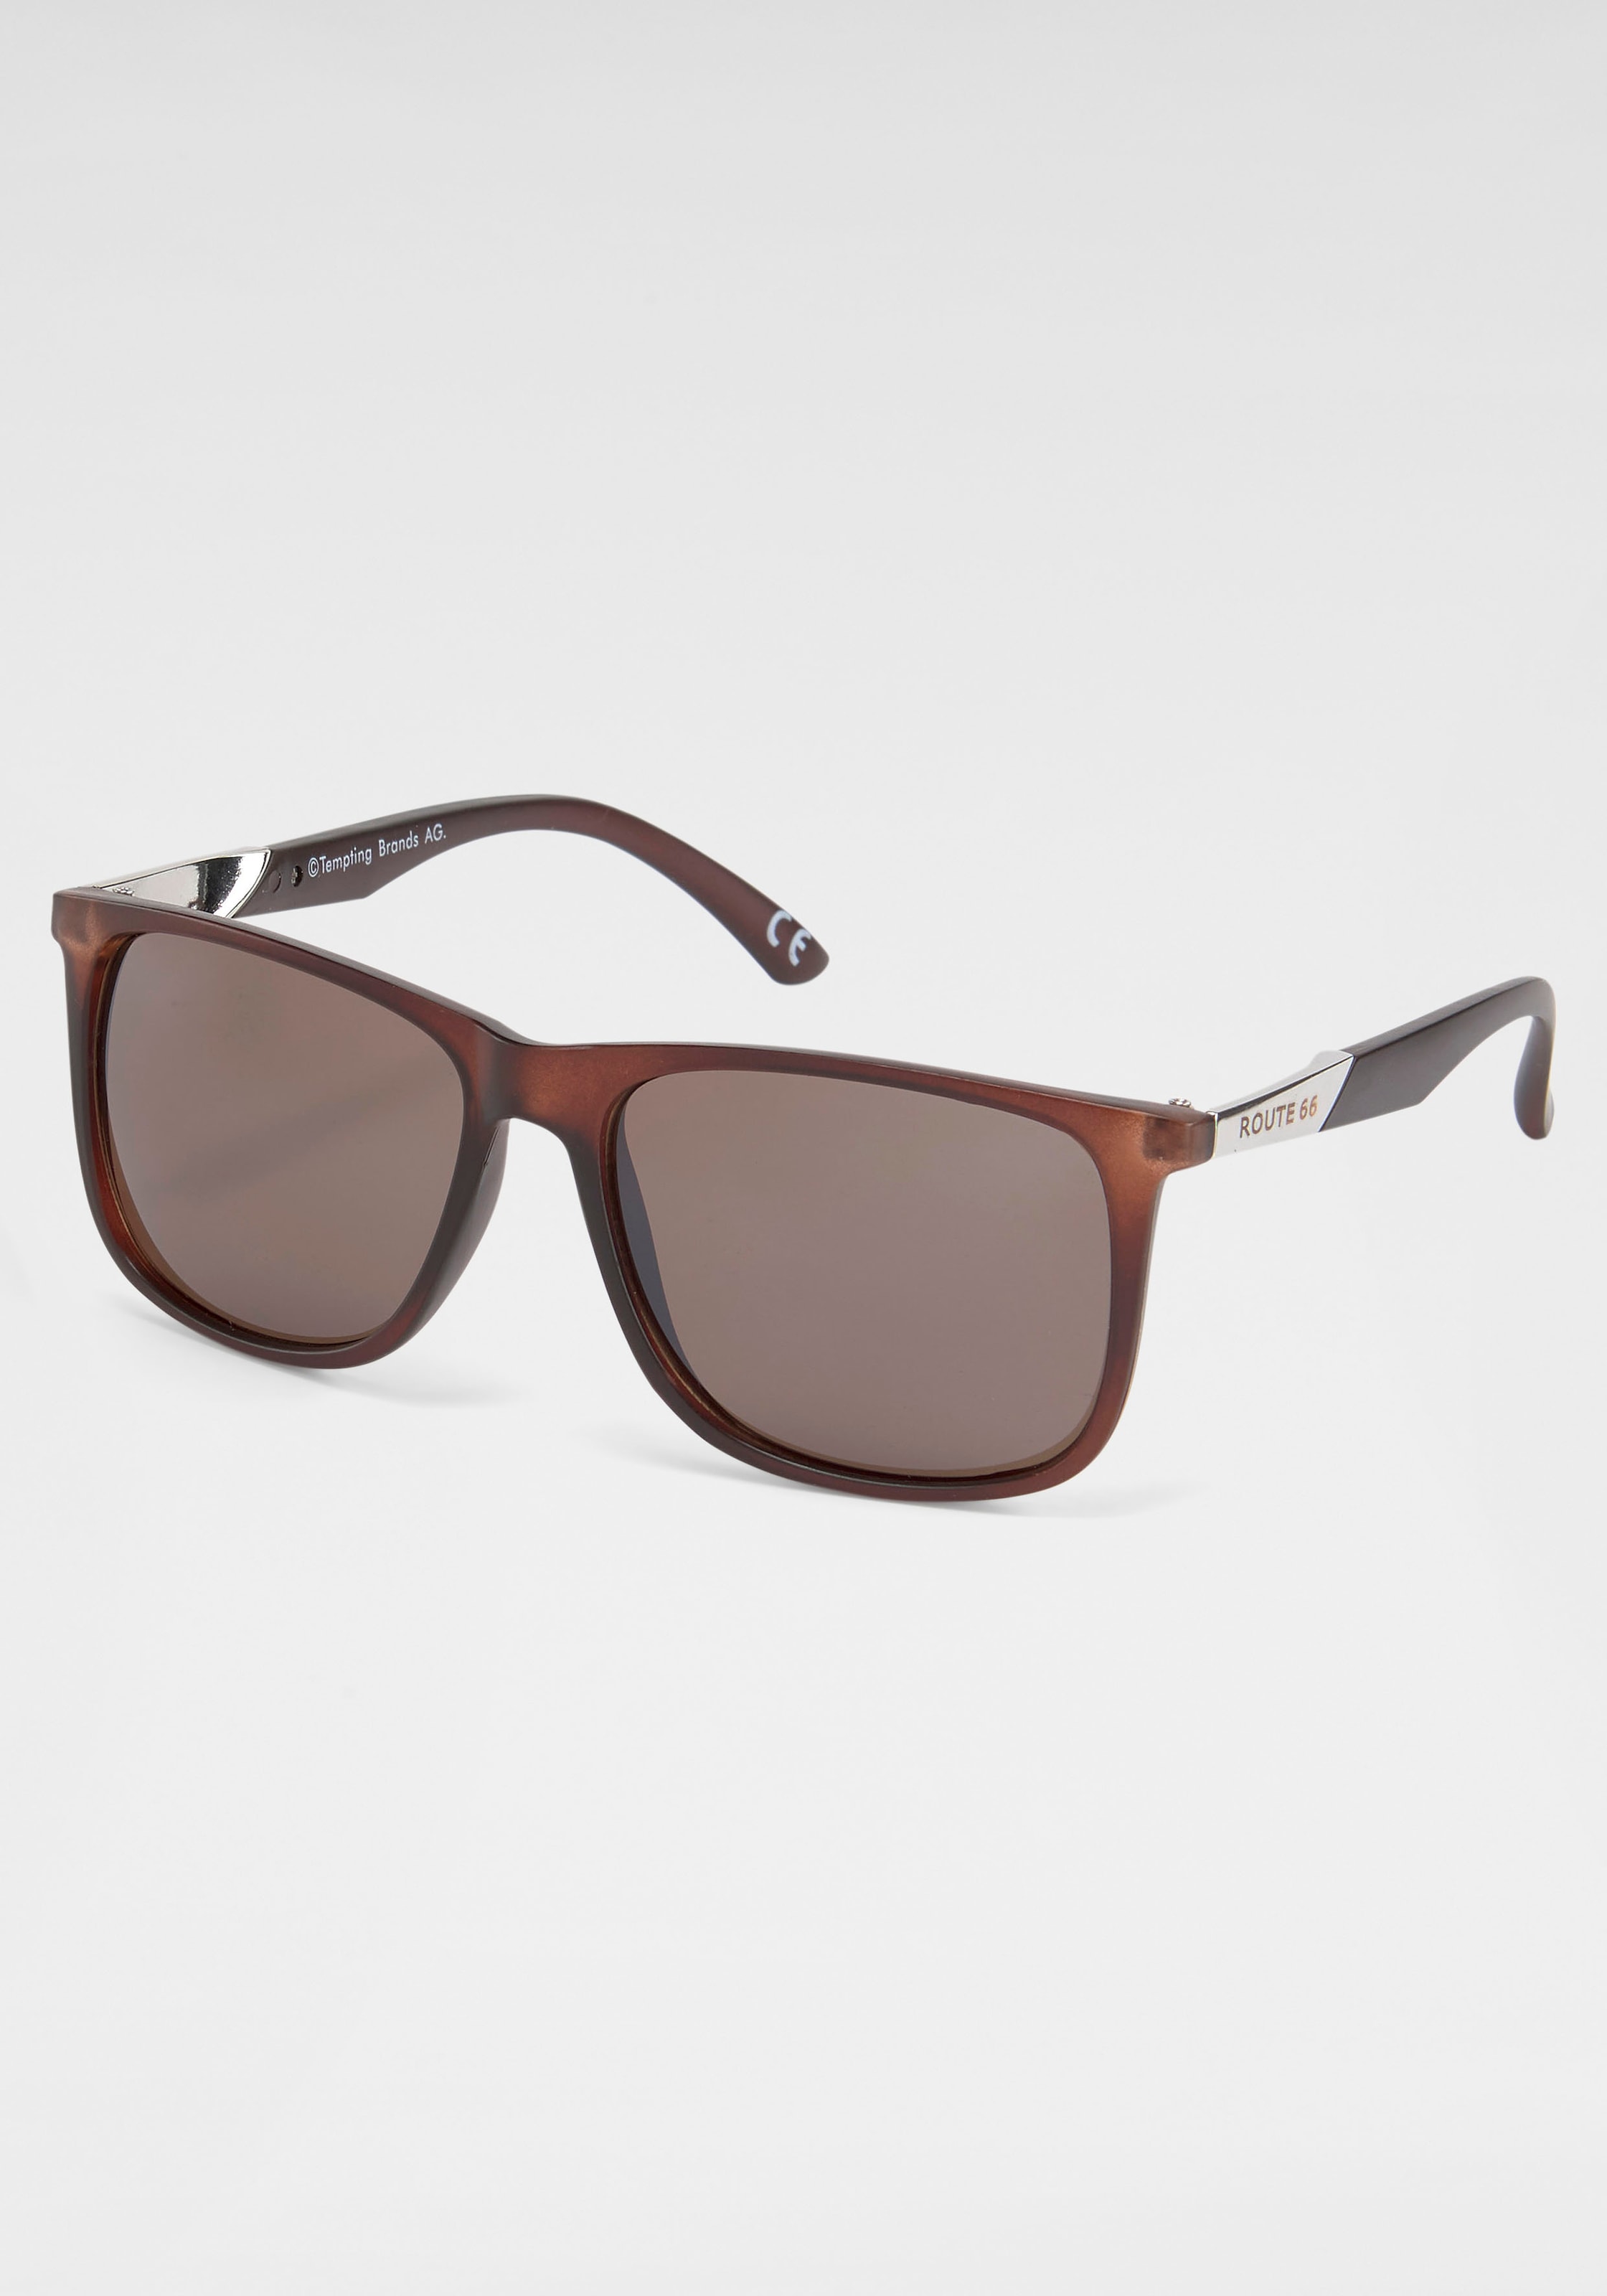 Eyewear catwalk online OTTO Sonnenbrille bei shoppen